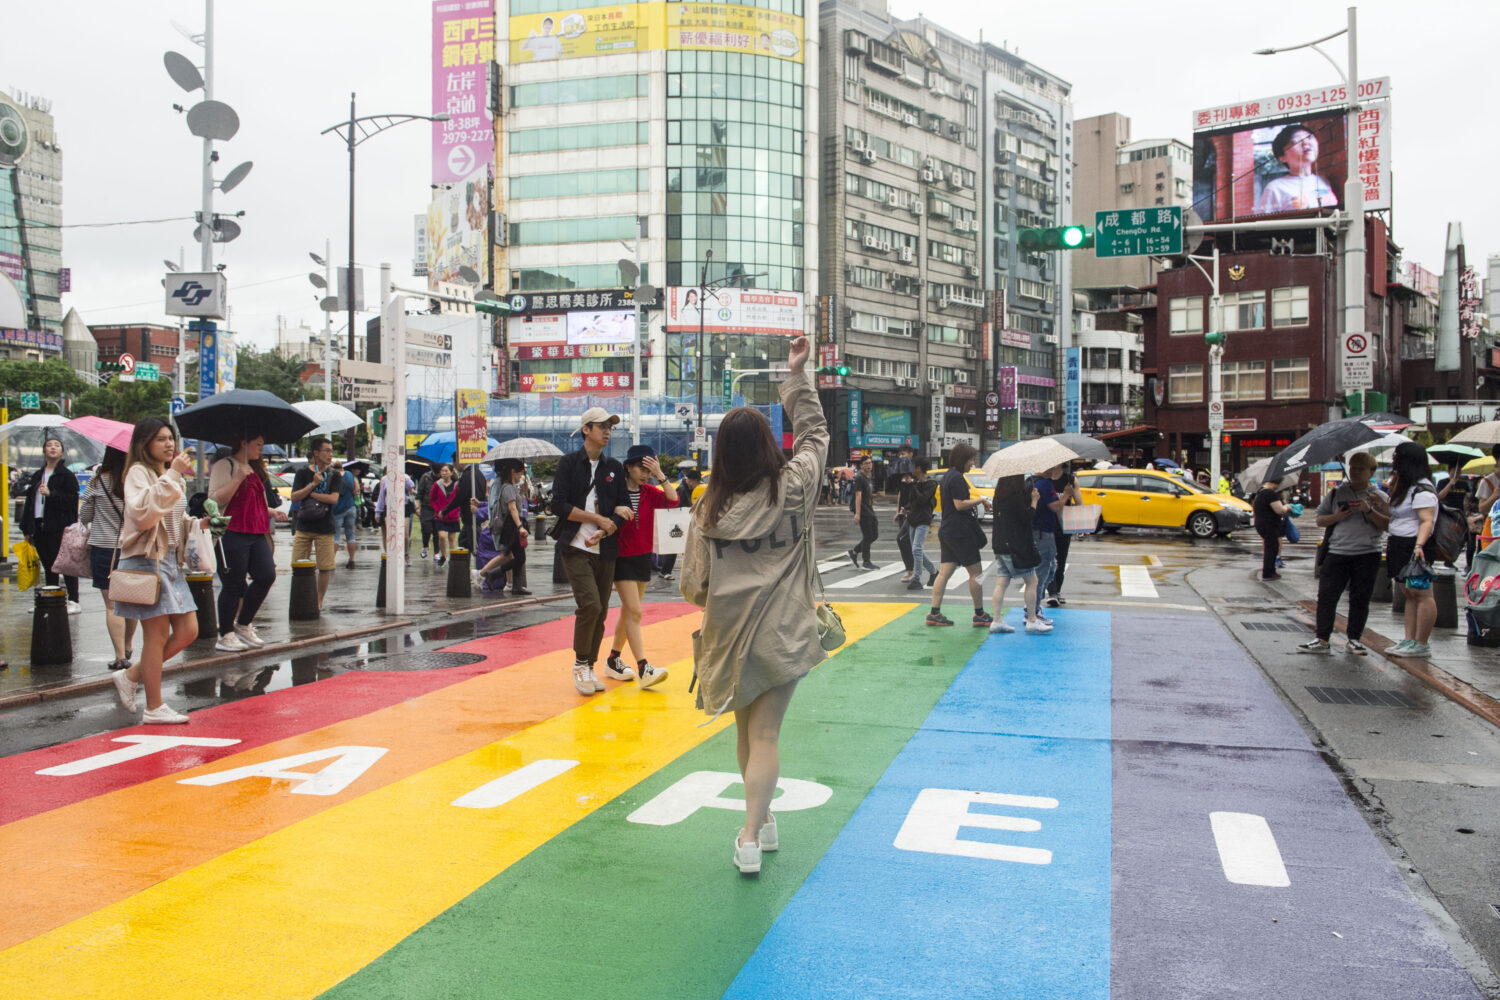 Un jeune femme dans un manteau beige marche sur une rue peinturée aux couleurs de l'arc-en-ciel sur laquelle Taipei est écrit en blanc. Elle fait dos à la caméra. D'autres passants, plusieurs avec des parapluies, marchent autour d'elle. En arrière-plan, de grands édifices vitrés et deux voitures jaunes. 